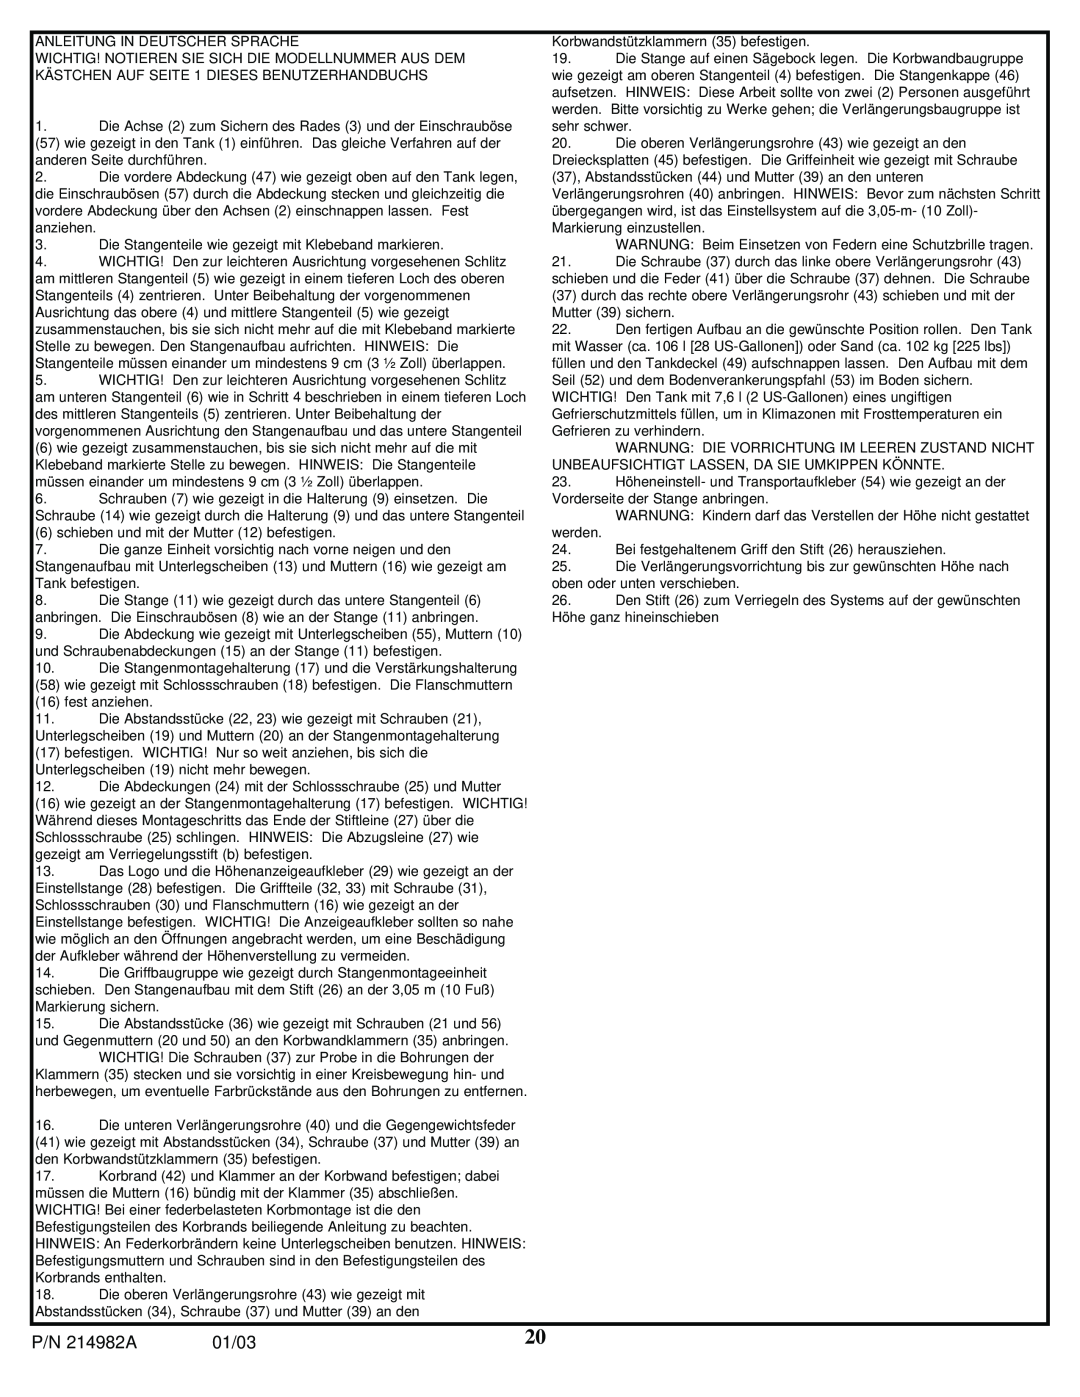 Huffy AIC250W manual P/N 214982A, 01/03, Anleitung In Deutscher Sprache 